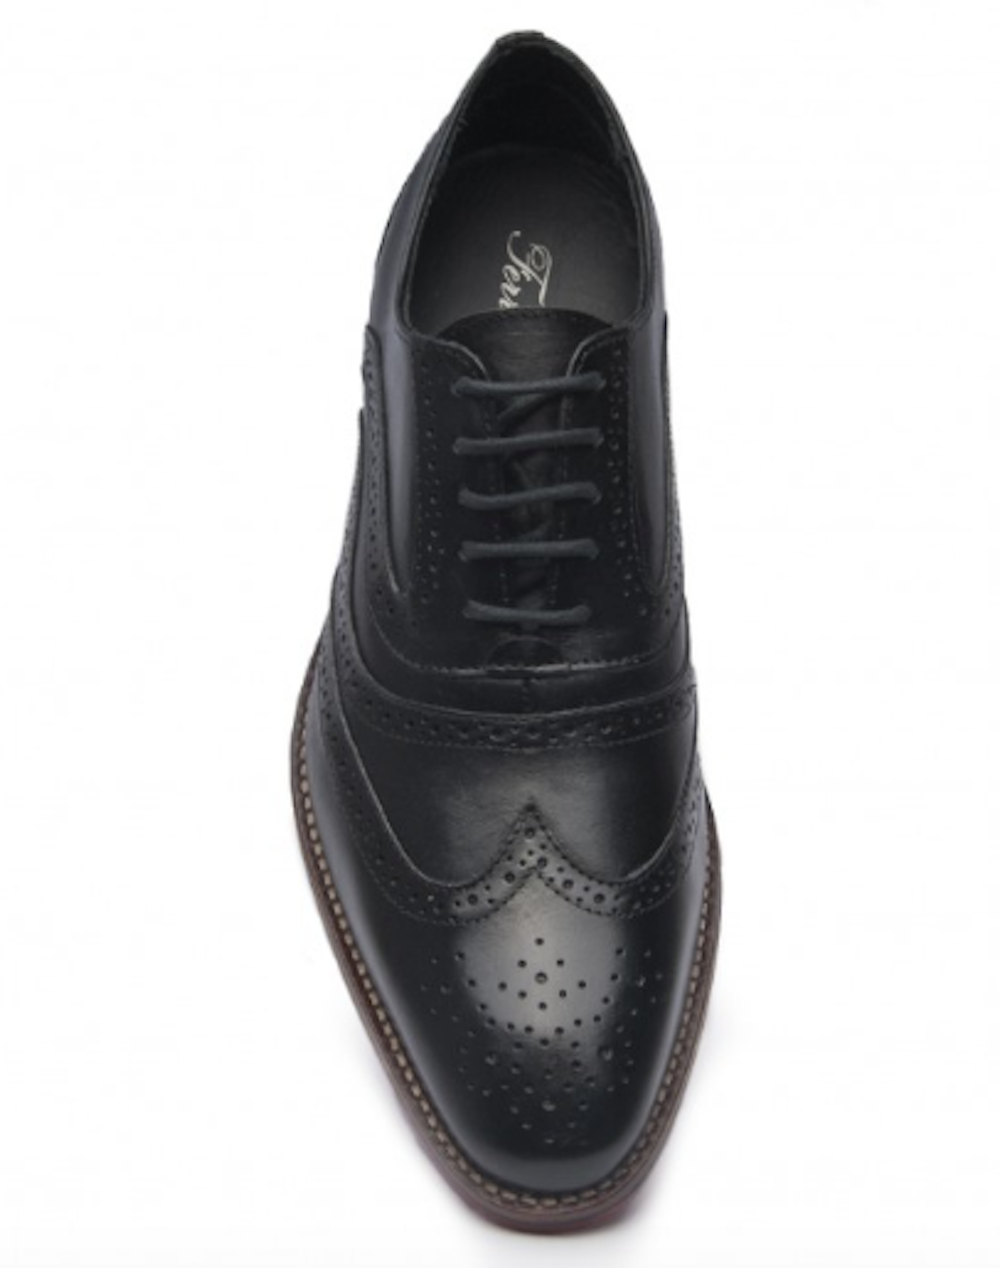 Zapatos de cuero para hombre Ferracini Caravaggio 5677